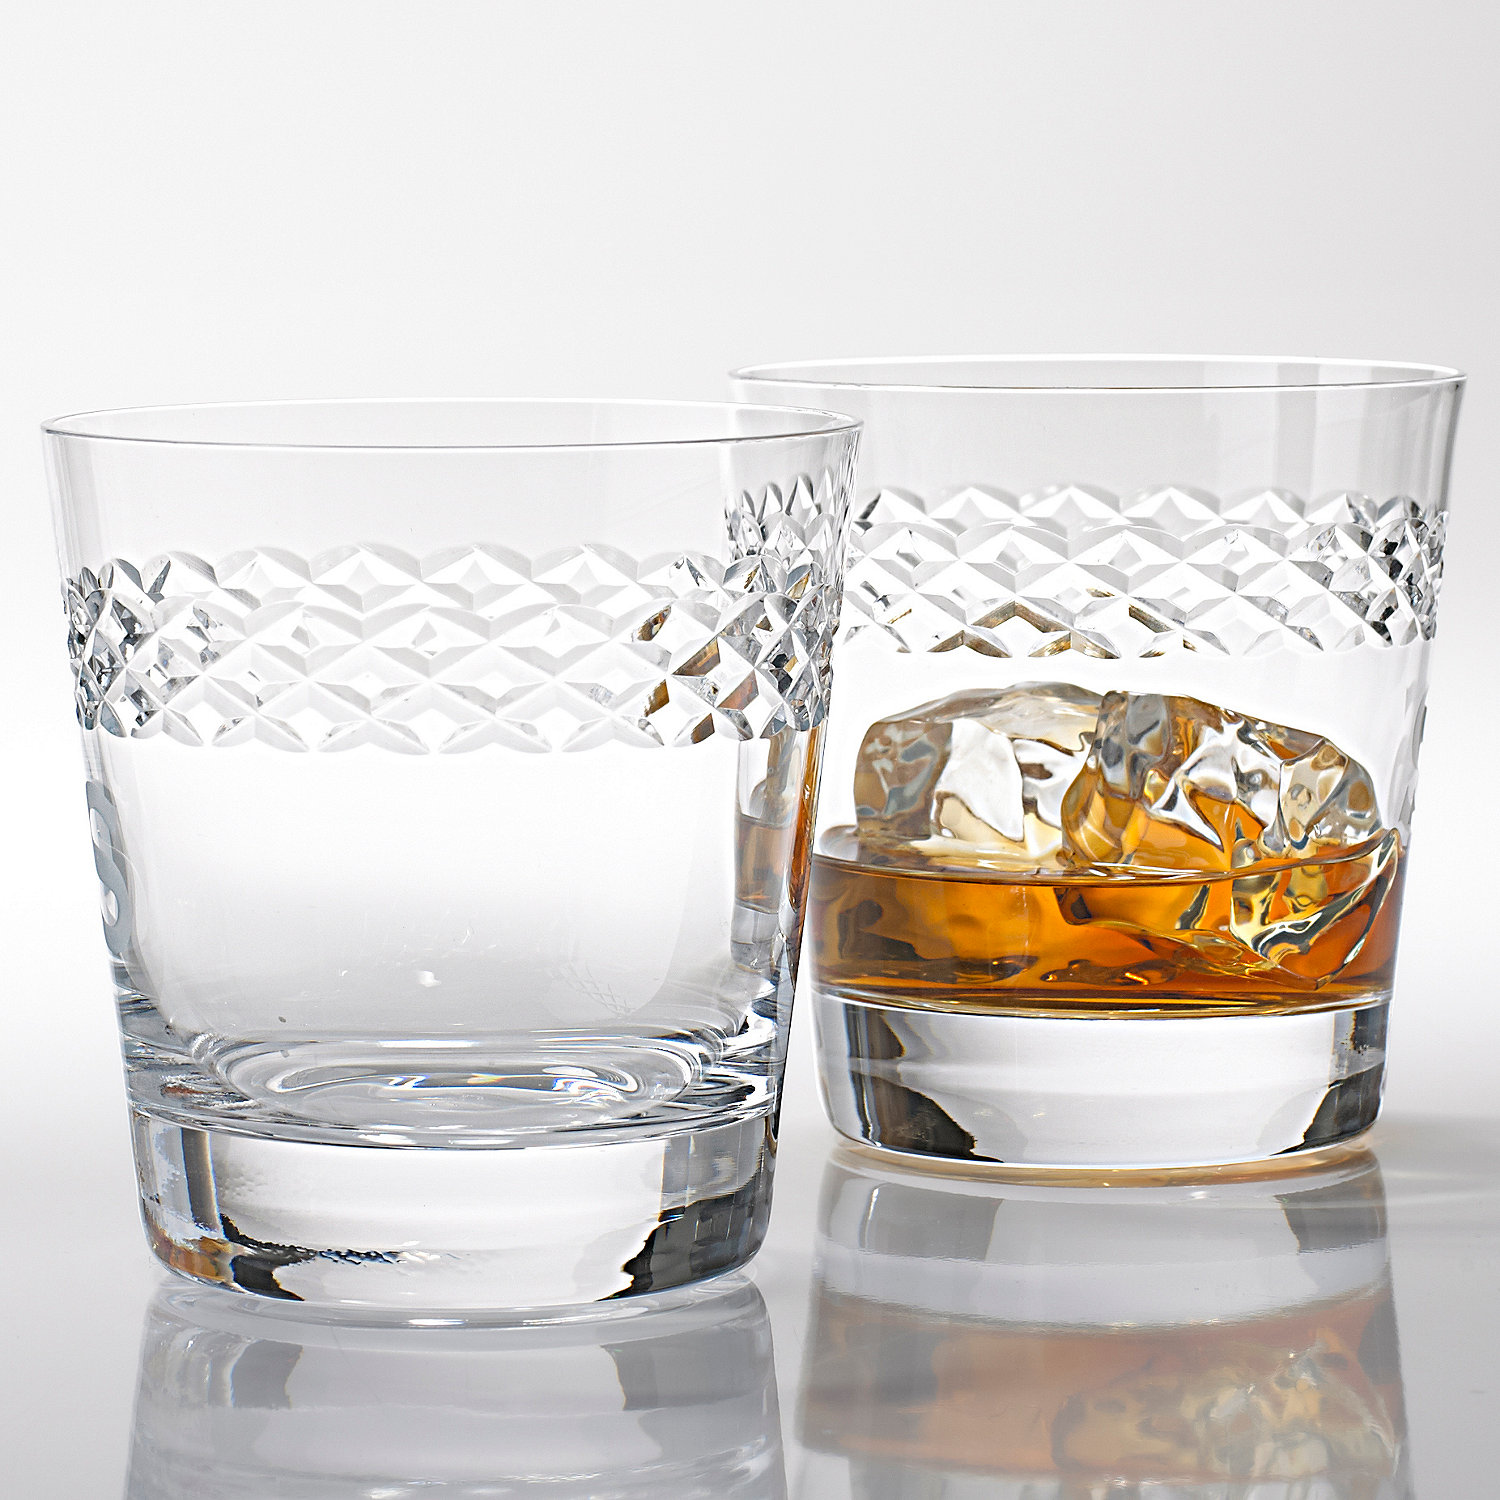 Whiskey Glasses Scotch Glasses Single Malt Scotch Glasses for Old Fashioned Whiskey Glasses